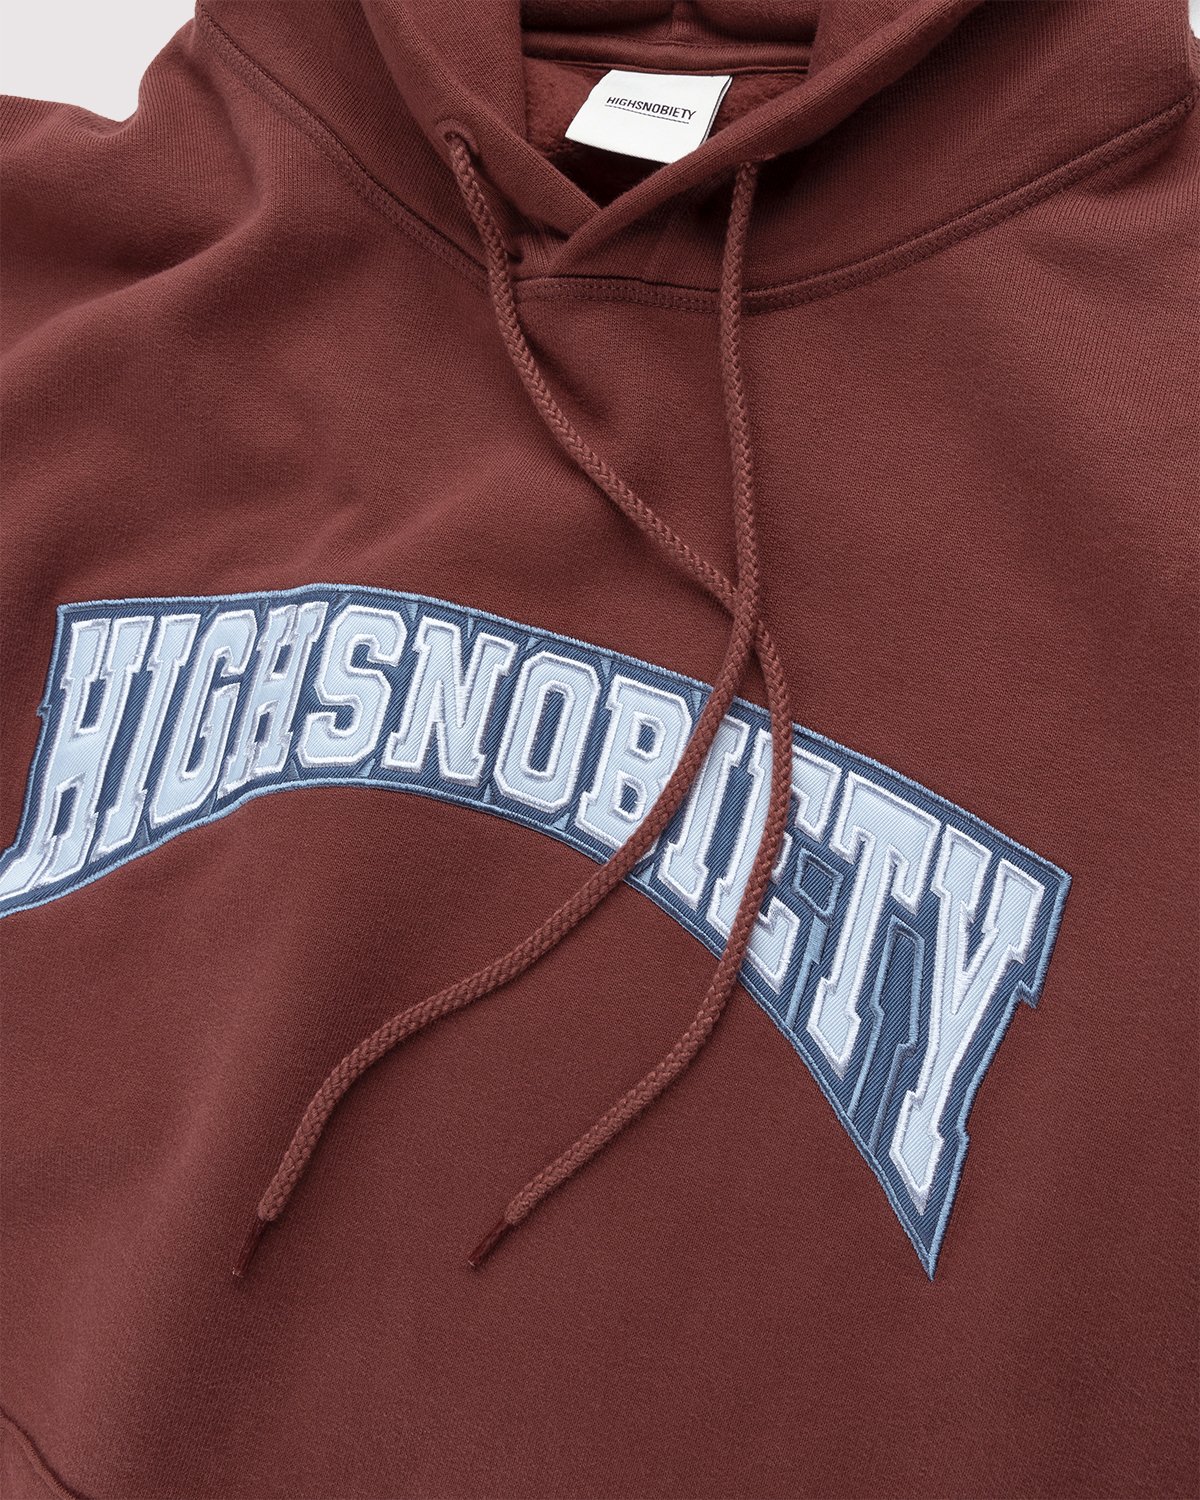 Highsnobiety - Collegiate Hoodie Brown - Clothing - Brown - Image 5